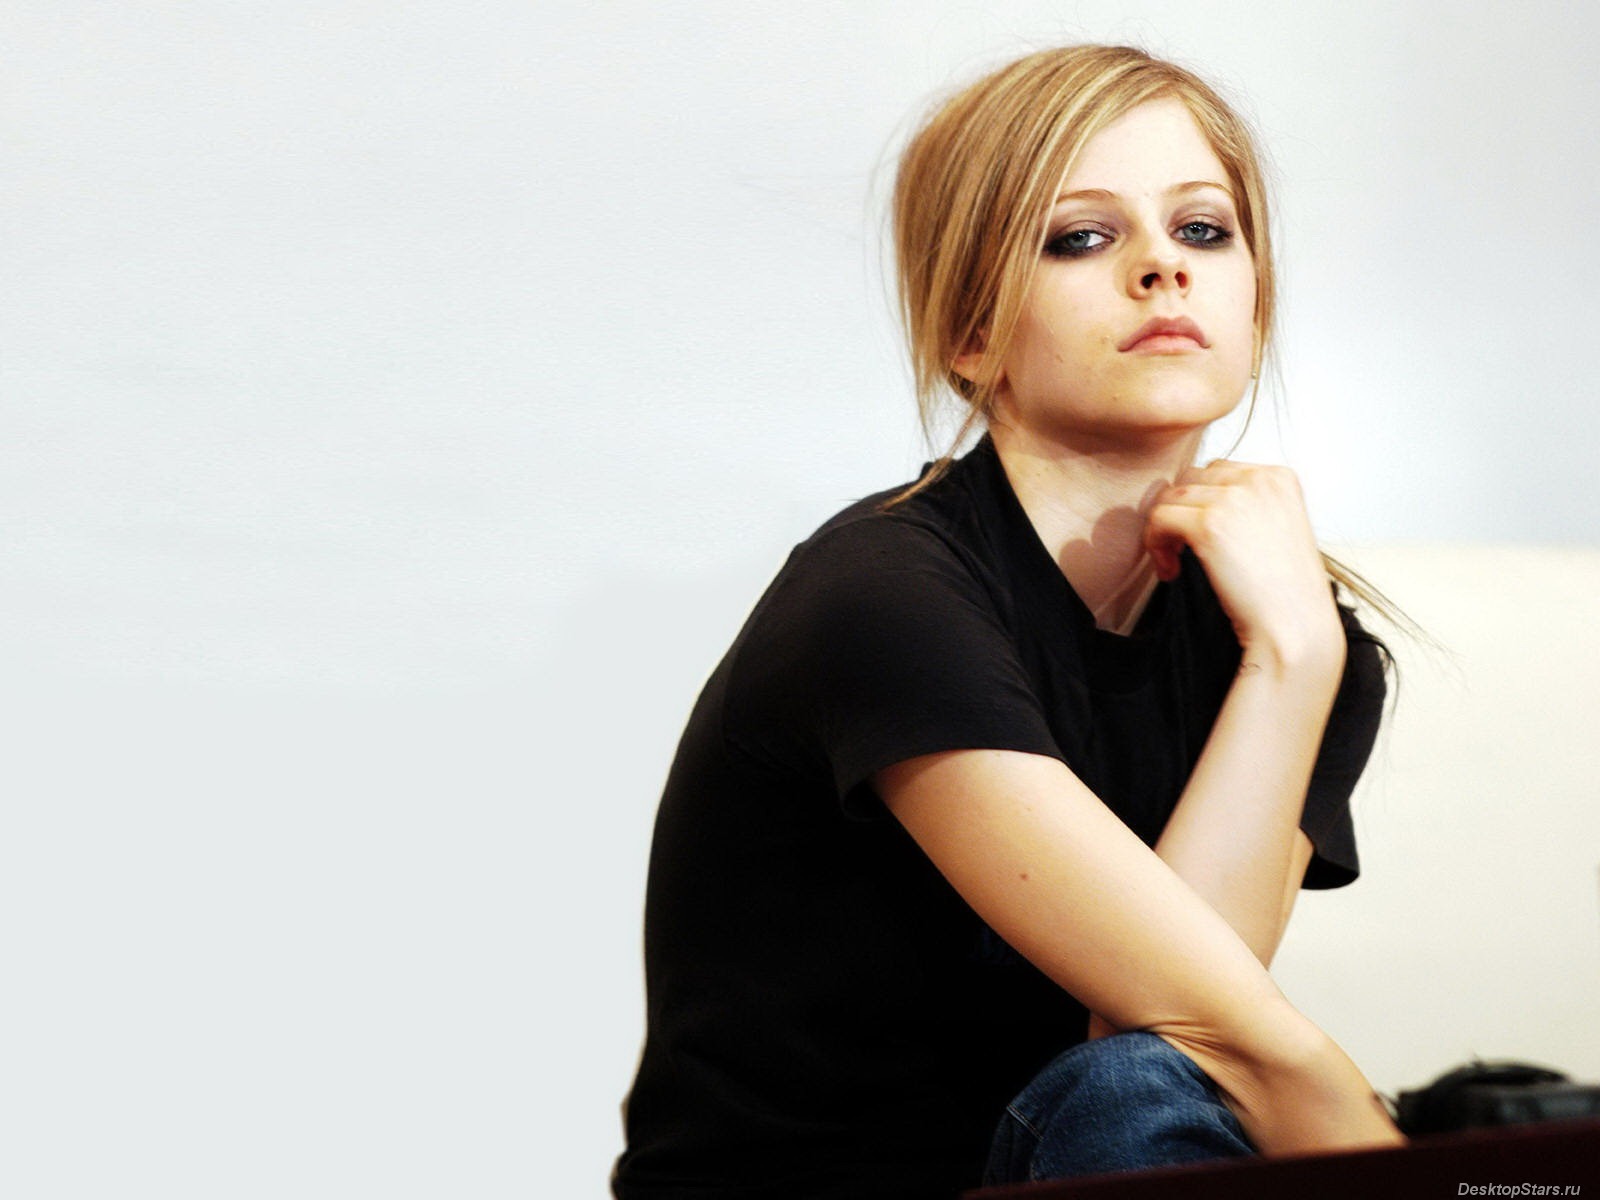 Avril Lavigne 艾薇儿·拉维妮 美女壁纸(三)22 - 1600x1200